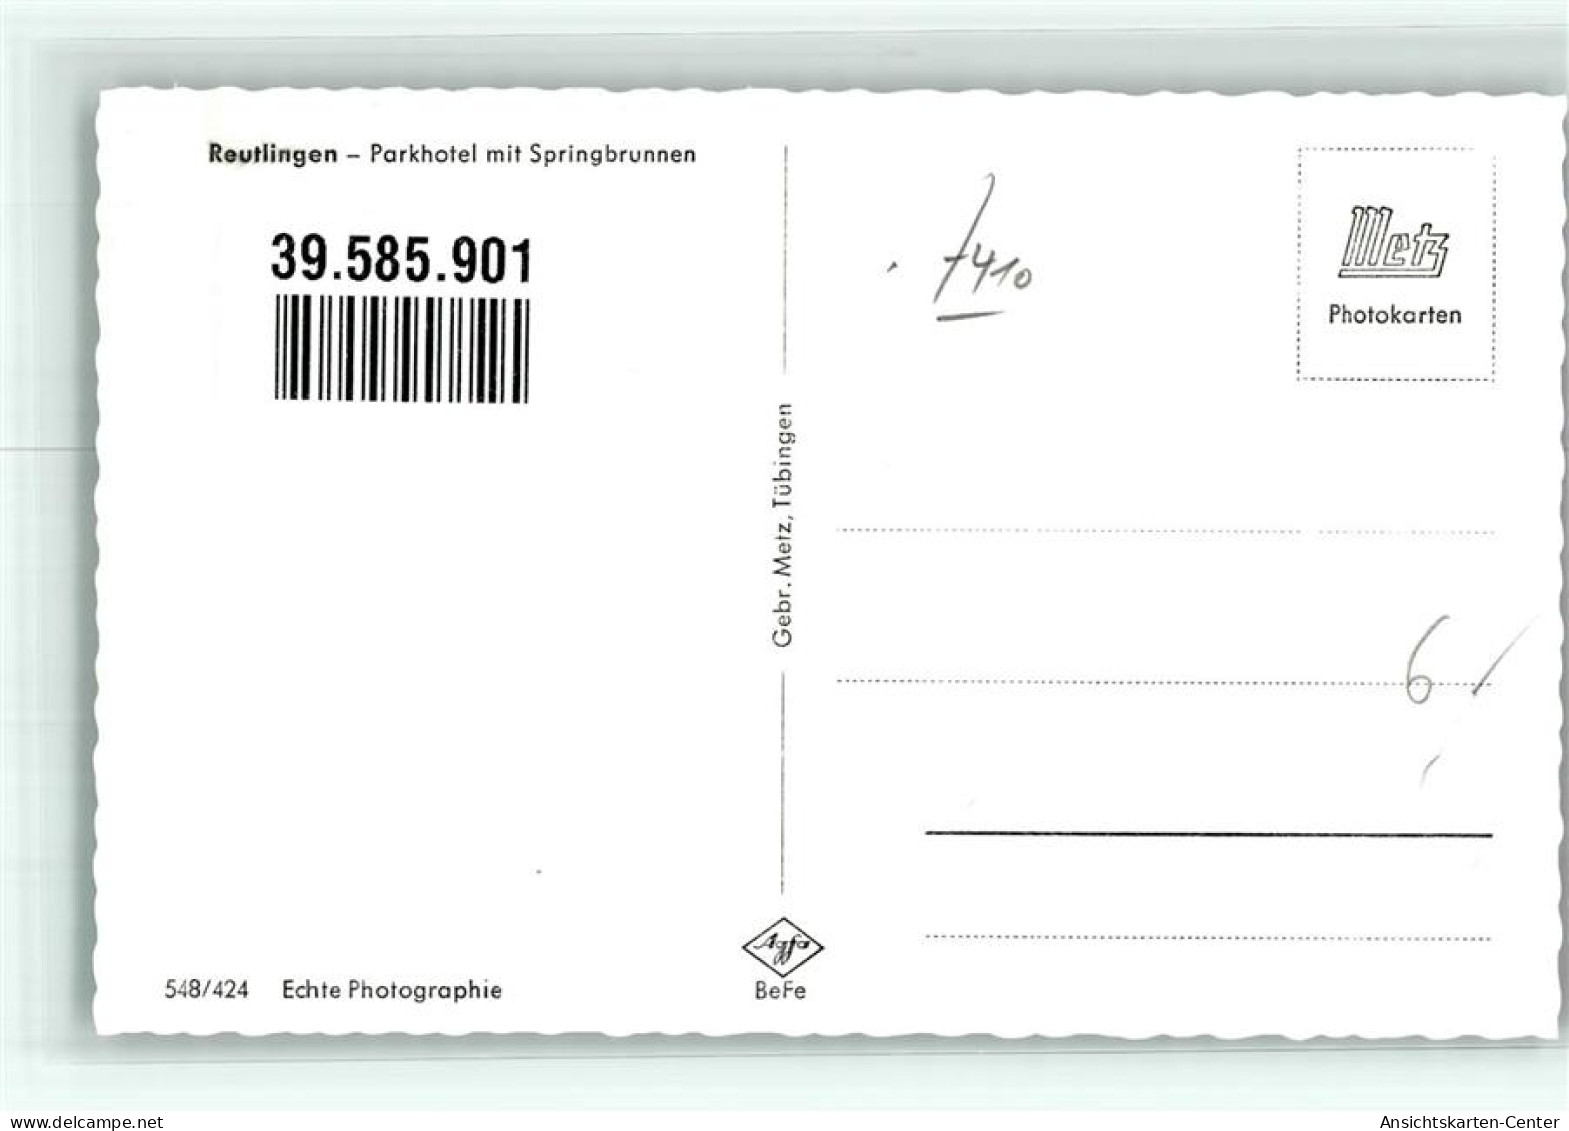 39585901 - Reutlingen - Reutlingen